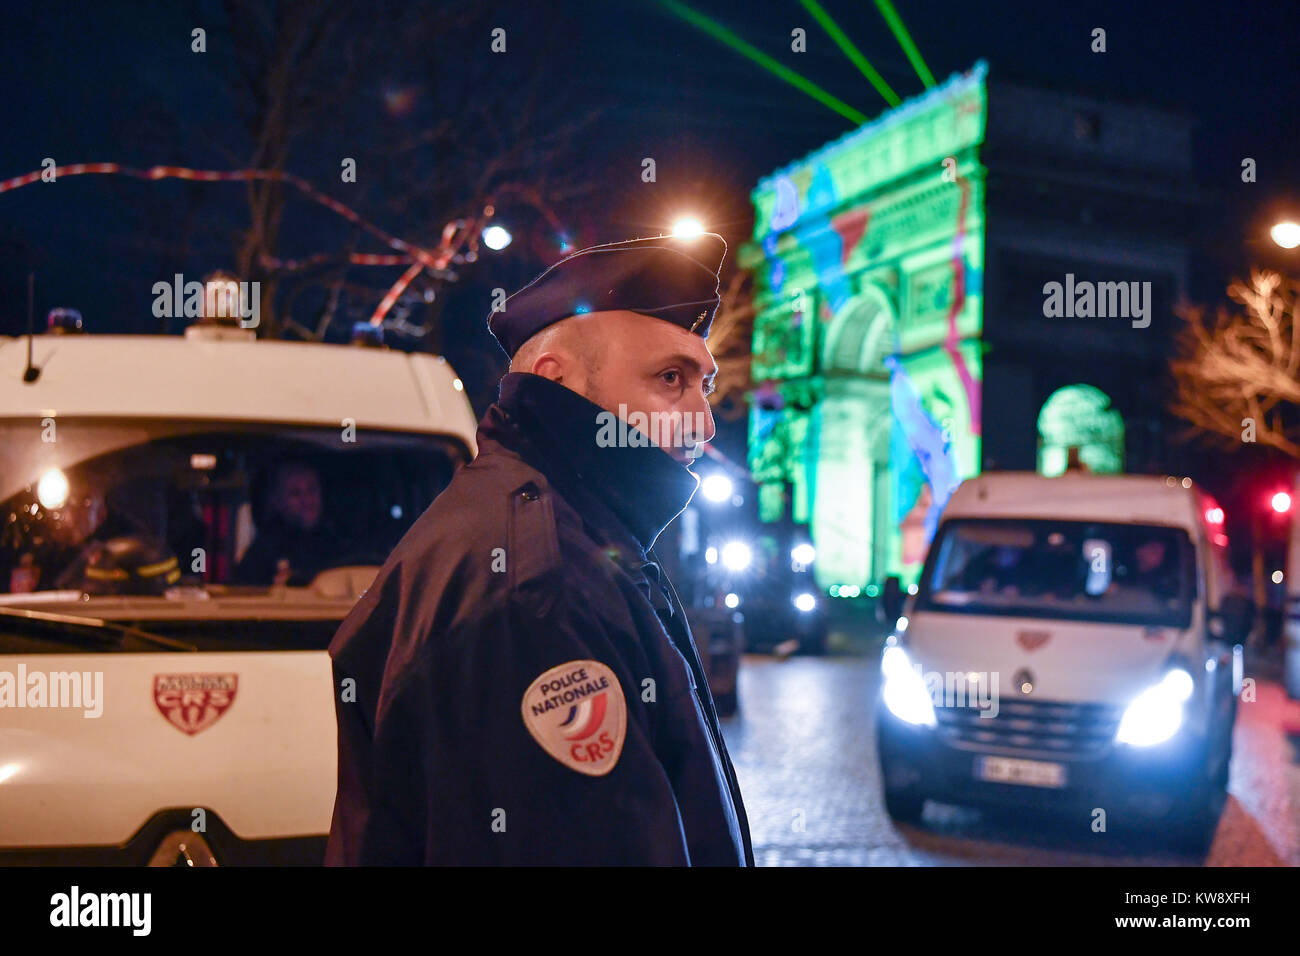 Paris, France. 31 Dec, 2017. Un policier monte la garde près de l'Arc de Triomphe à Paris, France, le 31 décembre 2017. Les mesures de sécurité ont été prises à travers le pays pour assurer la sécurité des fêtes de fin d'année. Crédit : Chen Yichen/Xinhua/Alamy Live News Banque D'Images